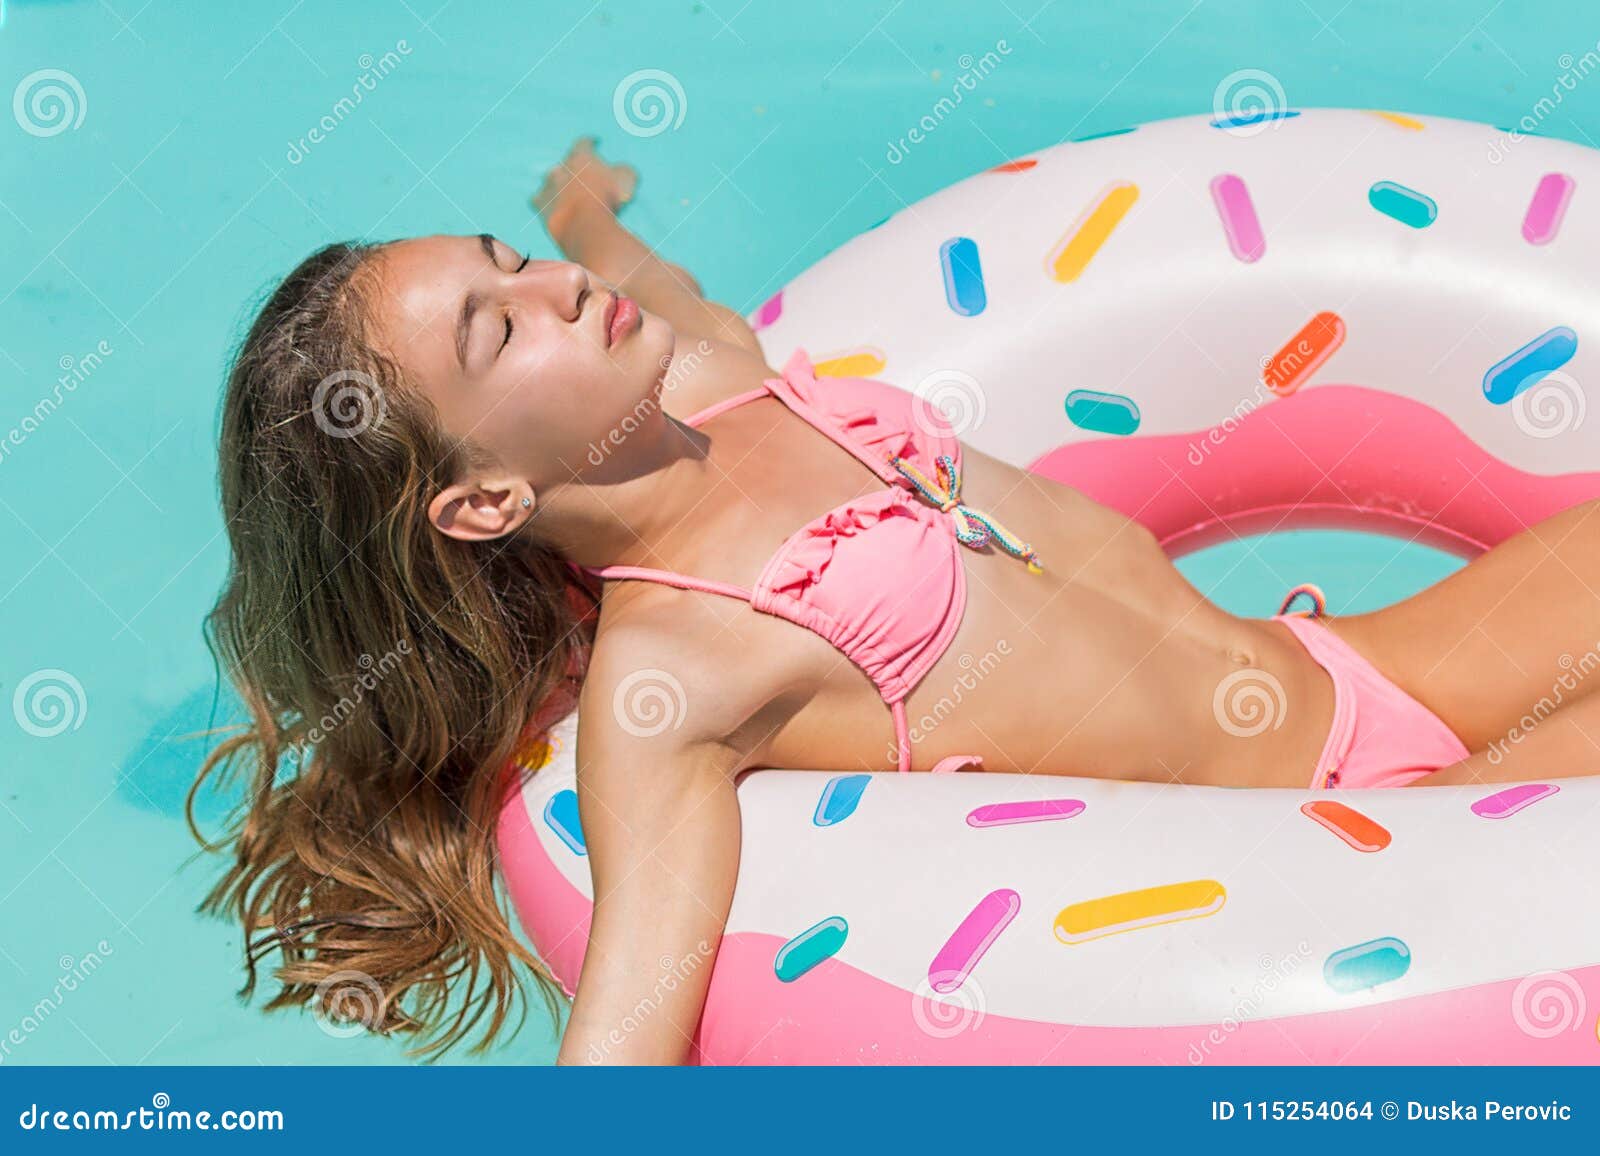 Young Women In Bikini Swim On Inflatable Ring Donut And Has Fun In